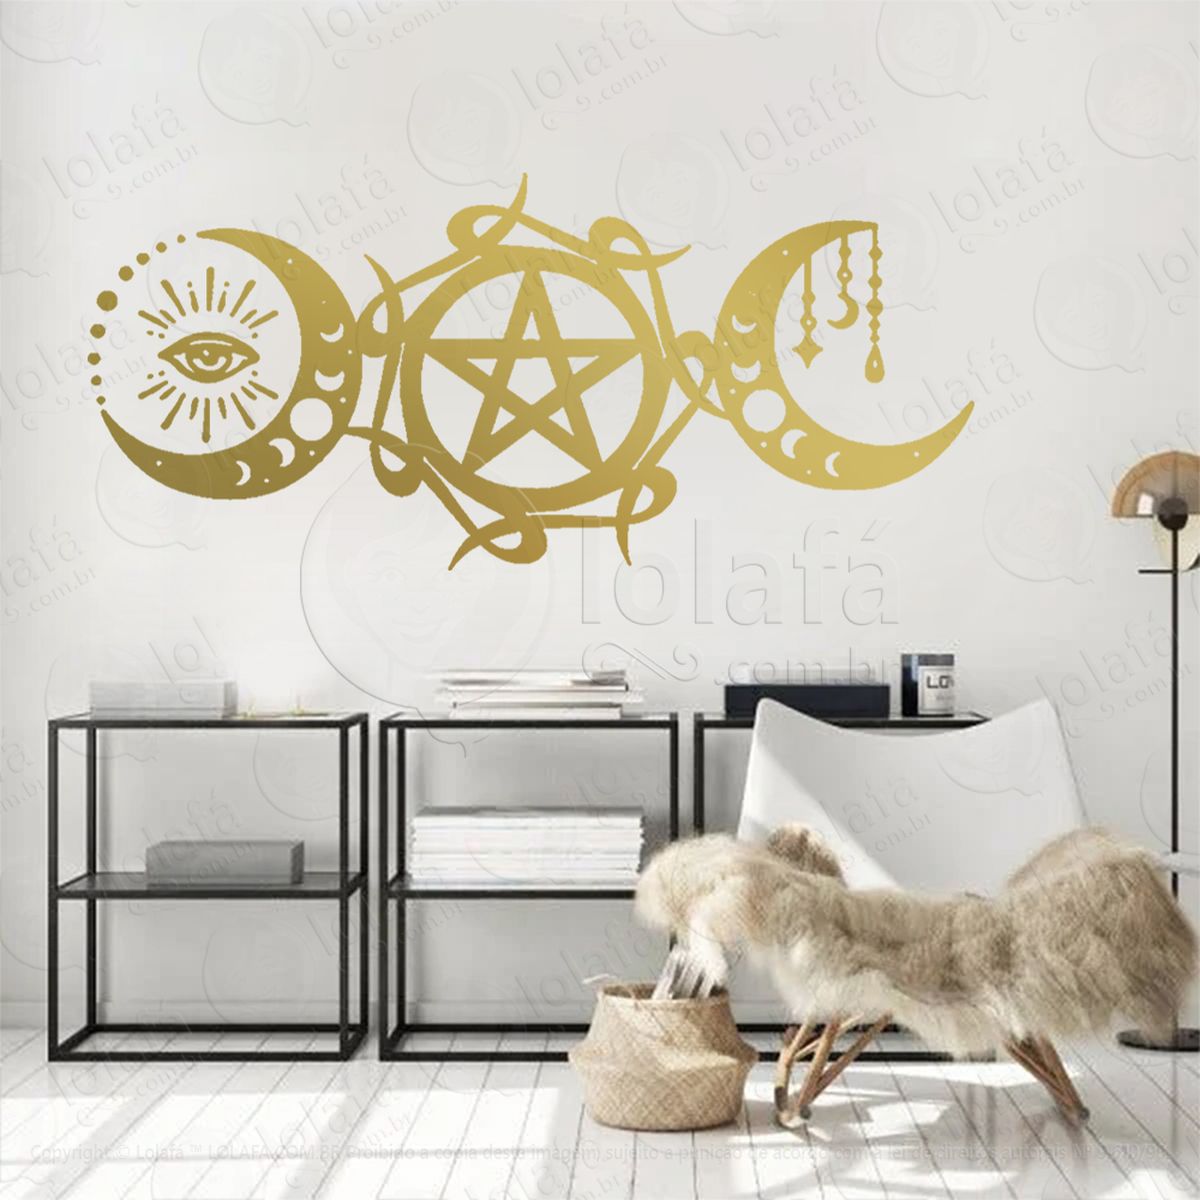 triluna wicca pagan adesivo de parede decorativo para casa, sala, quarto, vidro e altar ocultista - mod:317